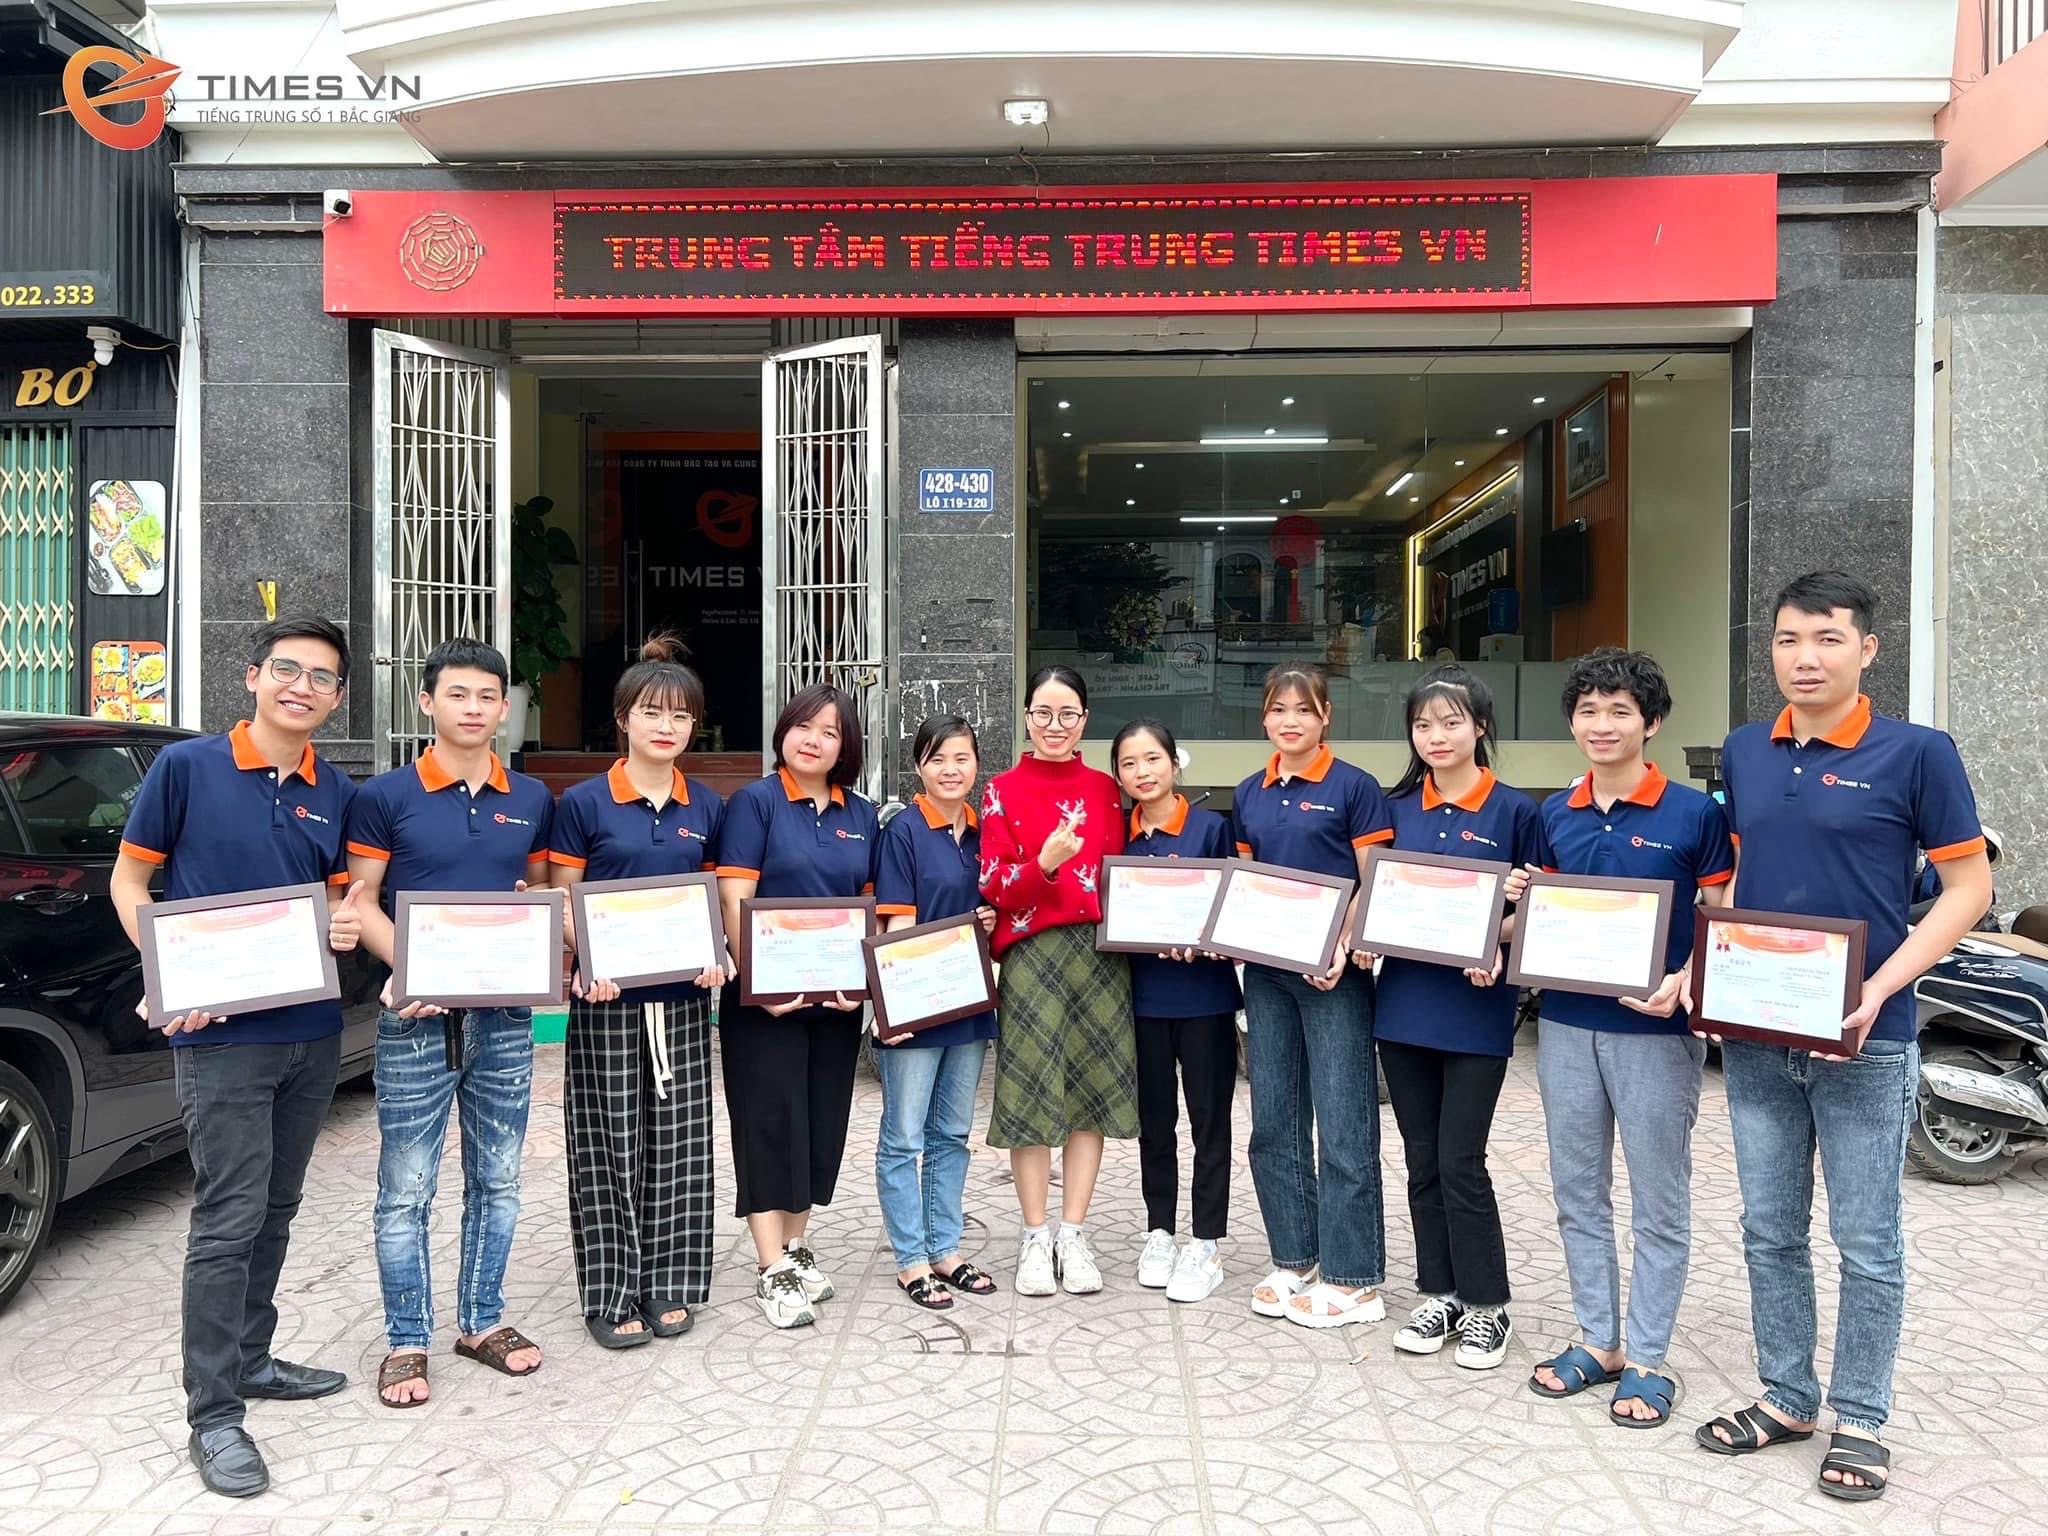 Tiếng trung TIMES VN Bắc Giang: 6 Phương pháp học tiếng trung hiệu quả